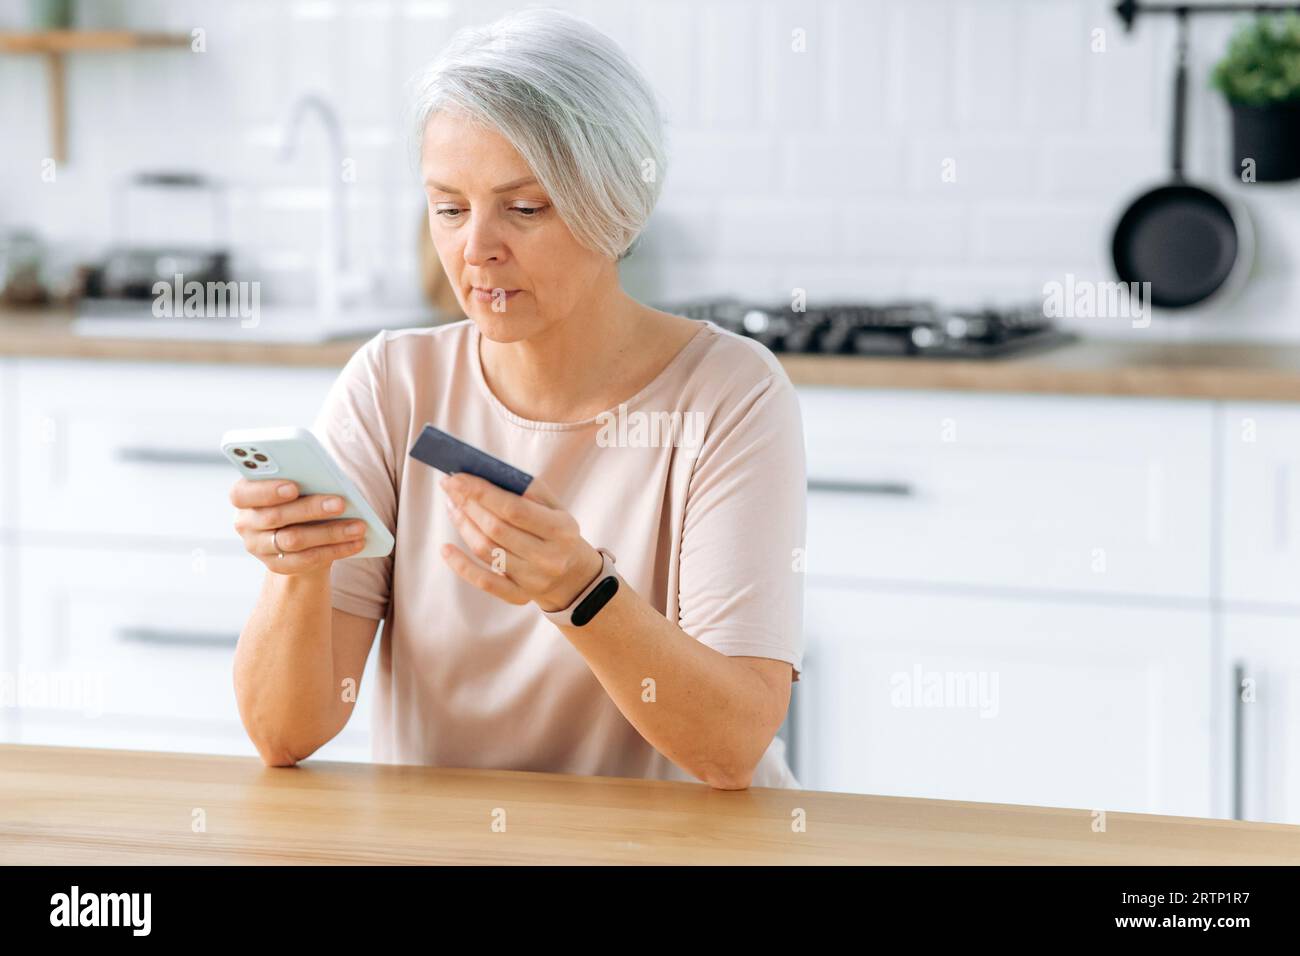 Konzentrierte weiße, reife, grauhaarige Frau, sitzt zu Hause in einer Küche, hält ein Smartphone und eine Kreditkarte, macht eine Online-Bestellung, bezahlt Einkäufe oder Rechnungen mit einer Bankkarte und einem Antrag Stockfoto